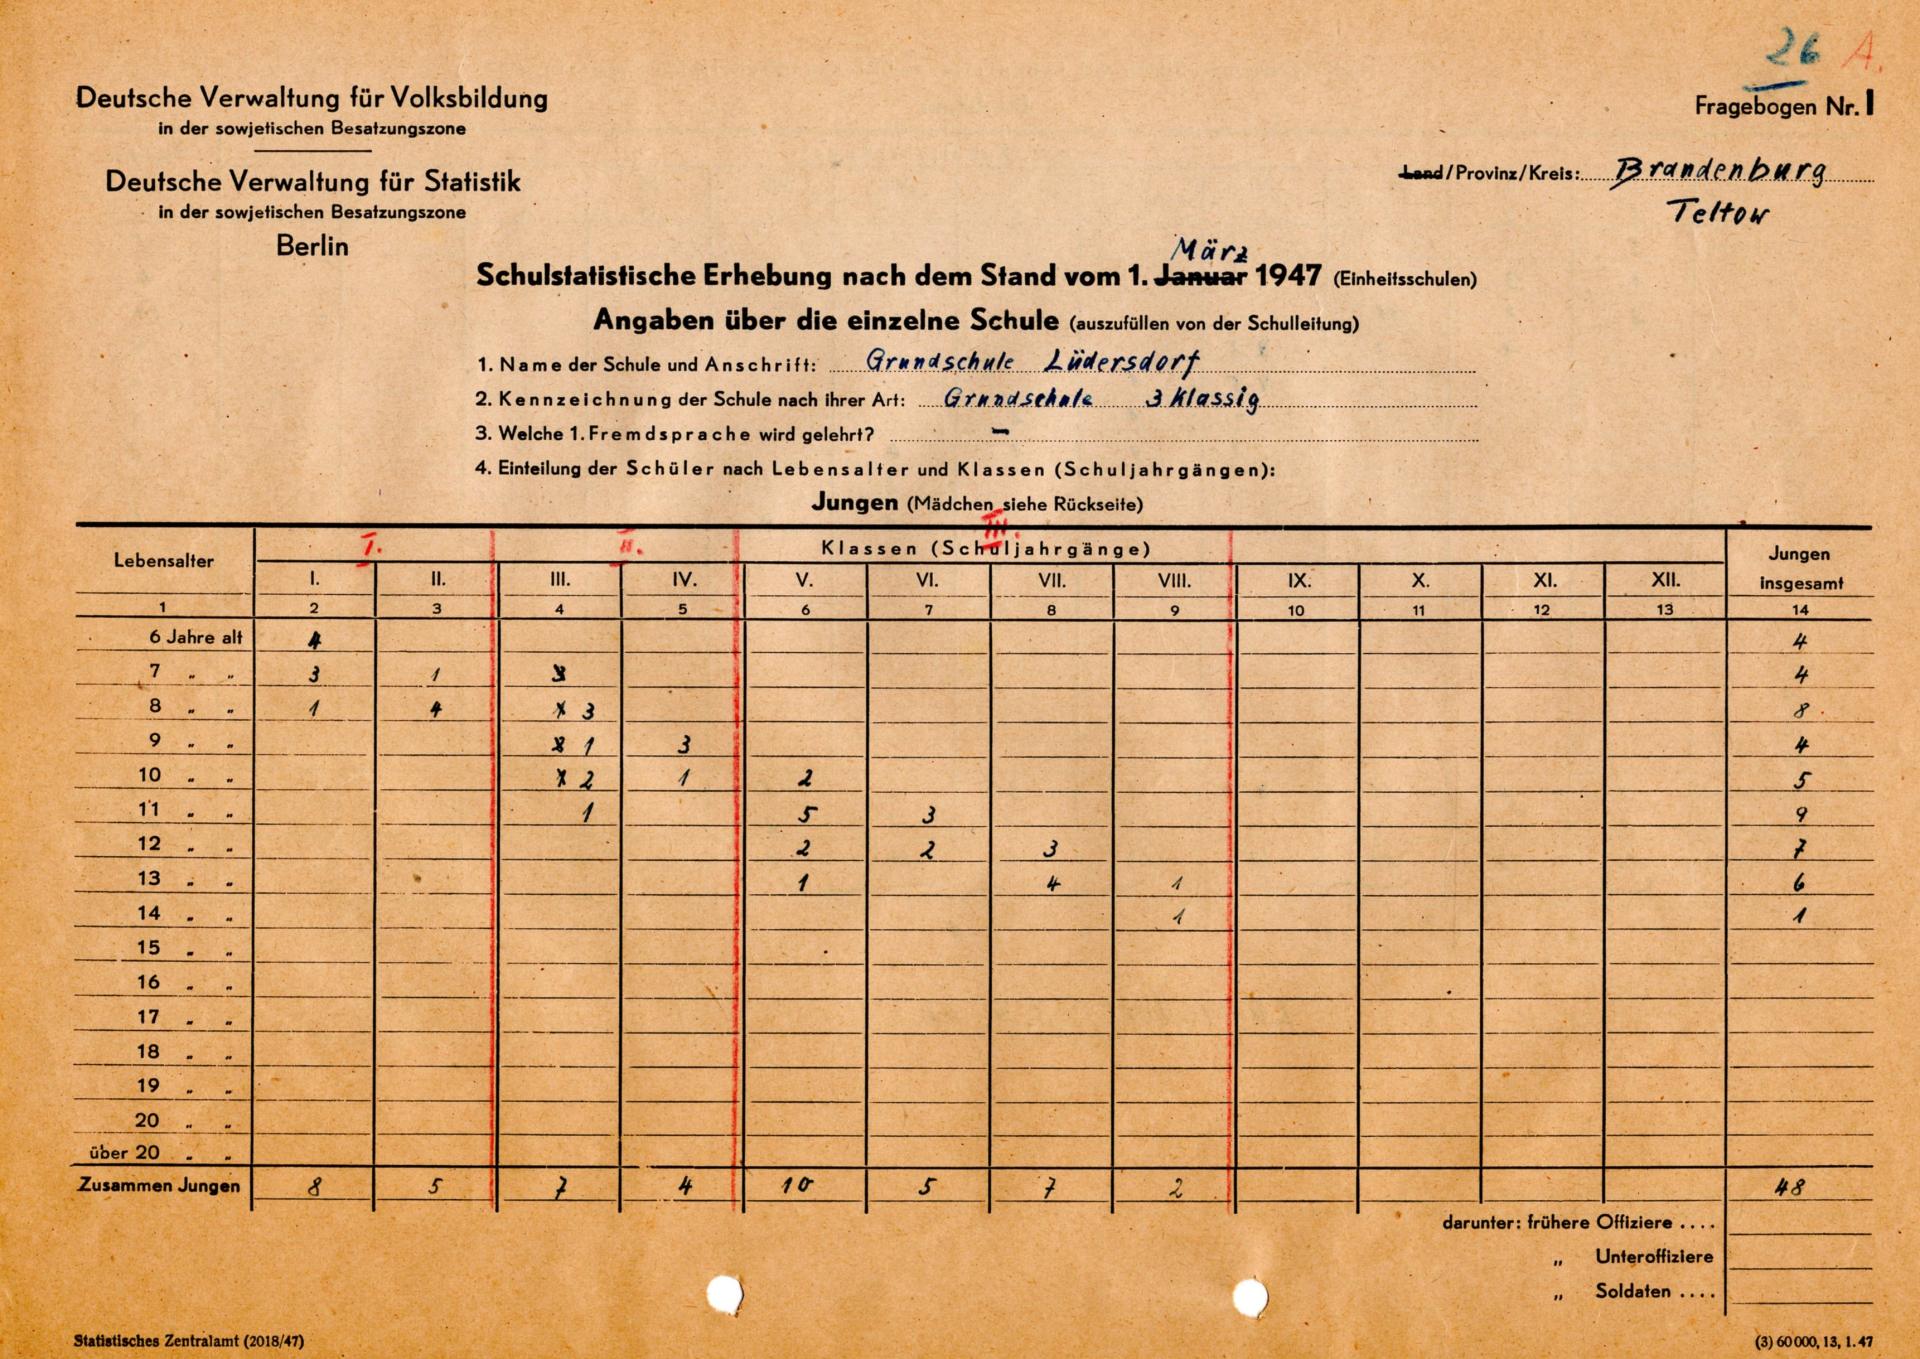 Schulstatistische Erhebung 1. März 1947